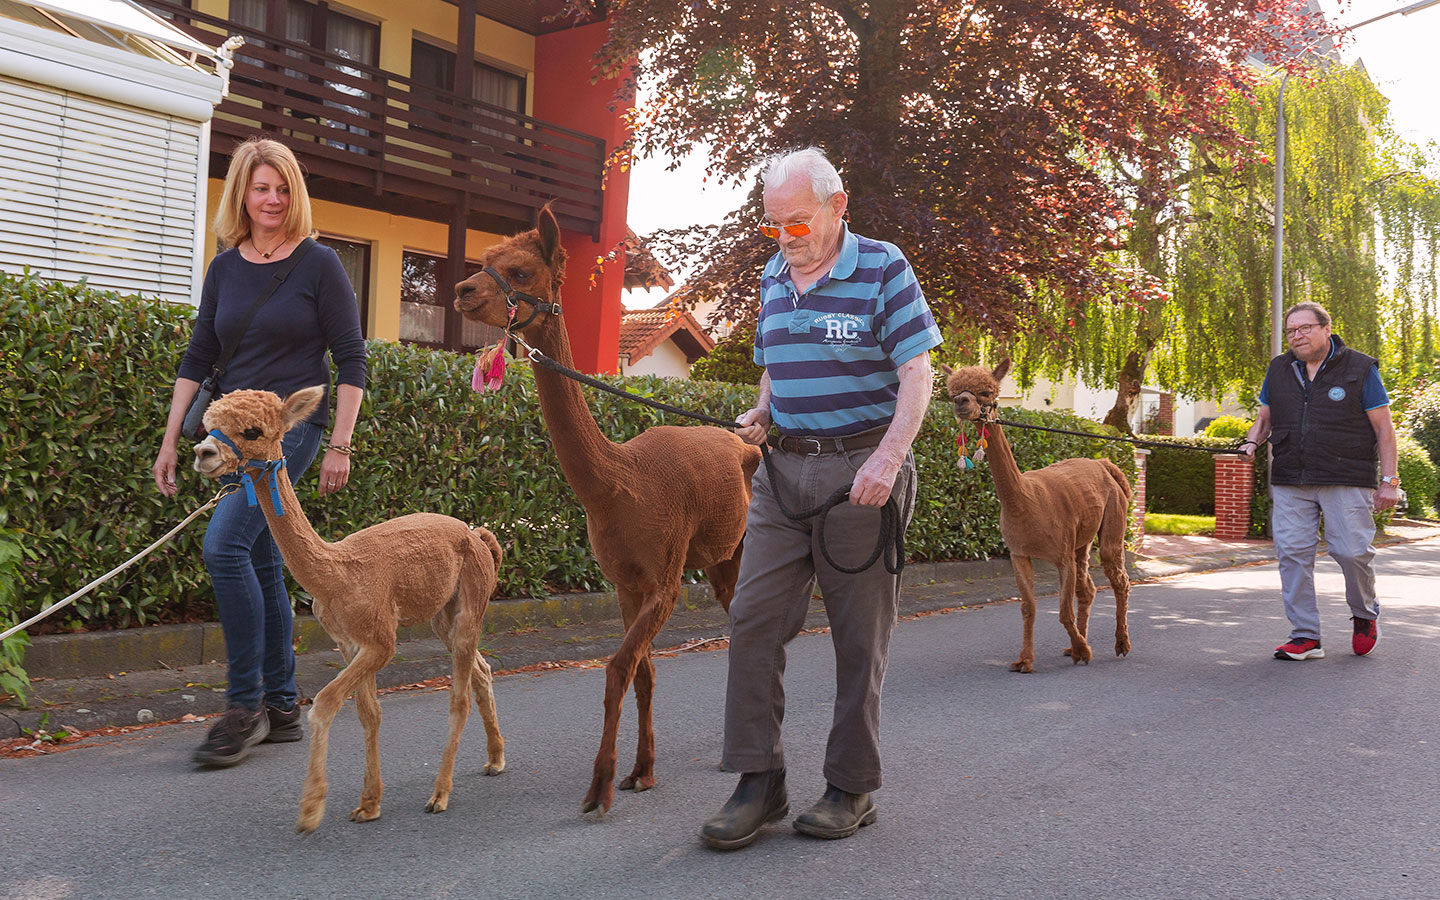 Foto: Bewohnerinnen und Bewohner eines Pflegebauernhofs laufen mit Alpakas eine Straße entlang.